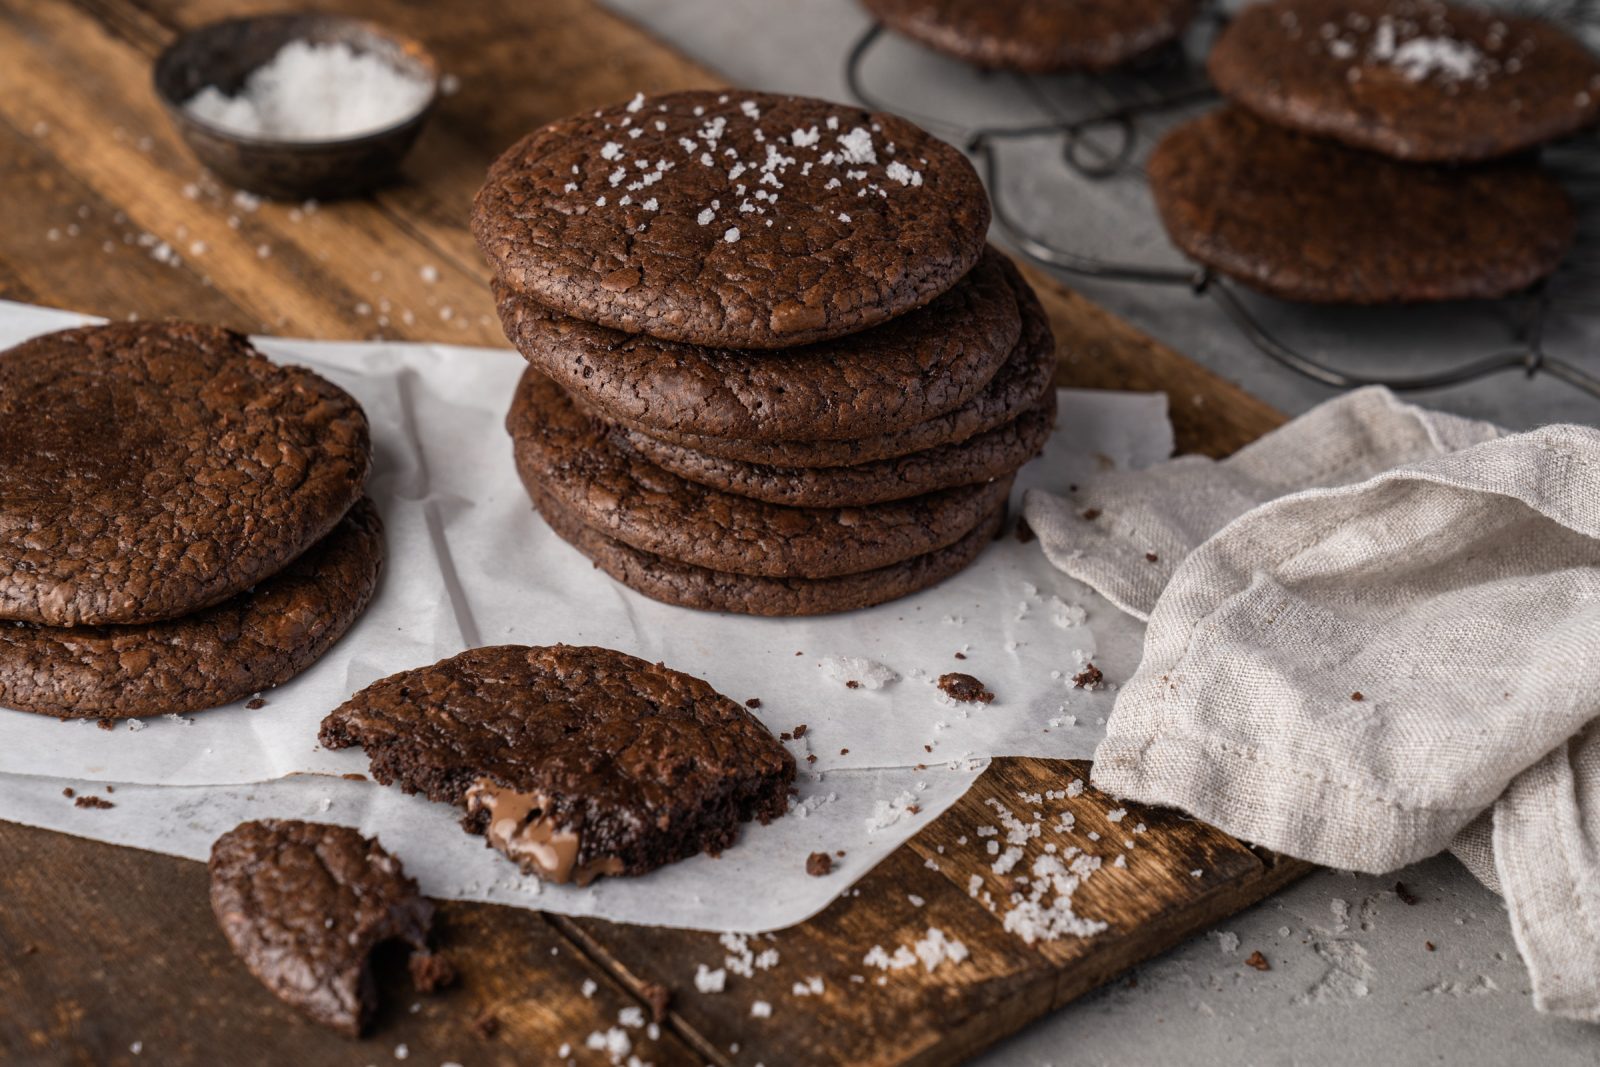 Extreme Chocolate Cookie 24 | Wer liebt sie nicht - Chocolate Chip Cookies? Diese kleinen Köstlichkeiten sind einfach unwiderstehlich und passen zu jeder Gelegenheit. Wir sind absolute Fans von Cookies und haben deshalb unser eigenes Rezept entwickelt, das wir heute mit euch teilen möchten. Unsere Chocolate Chip Cookies sind weich und saftig, genau wie in den USA, und vollgepackt mit Schokolade. Diese Cookies sind der perfekte Snack für zwischendurch, ein tolles Mitbringsel und die perfekte Partyleckerei!